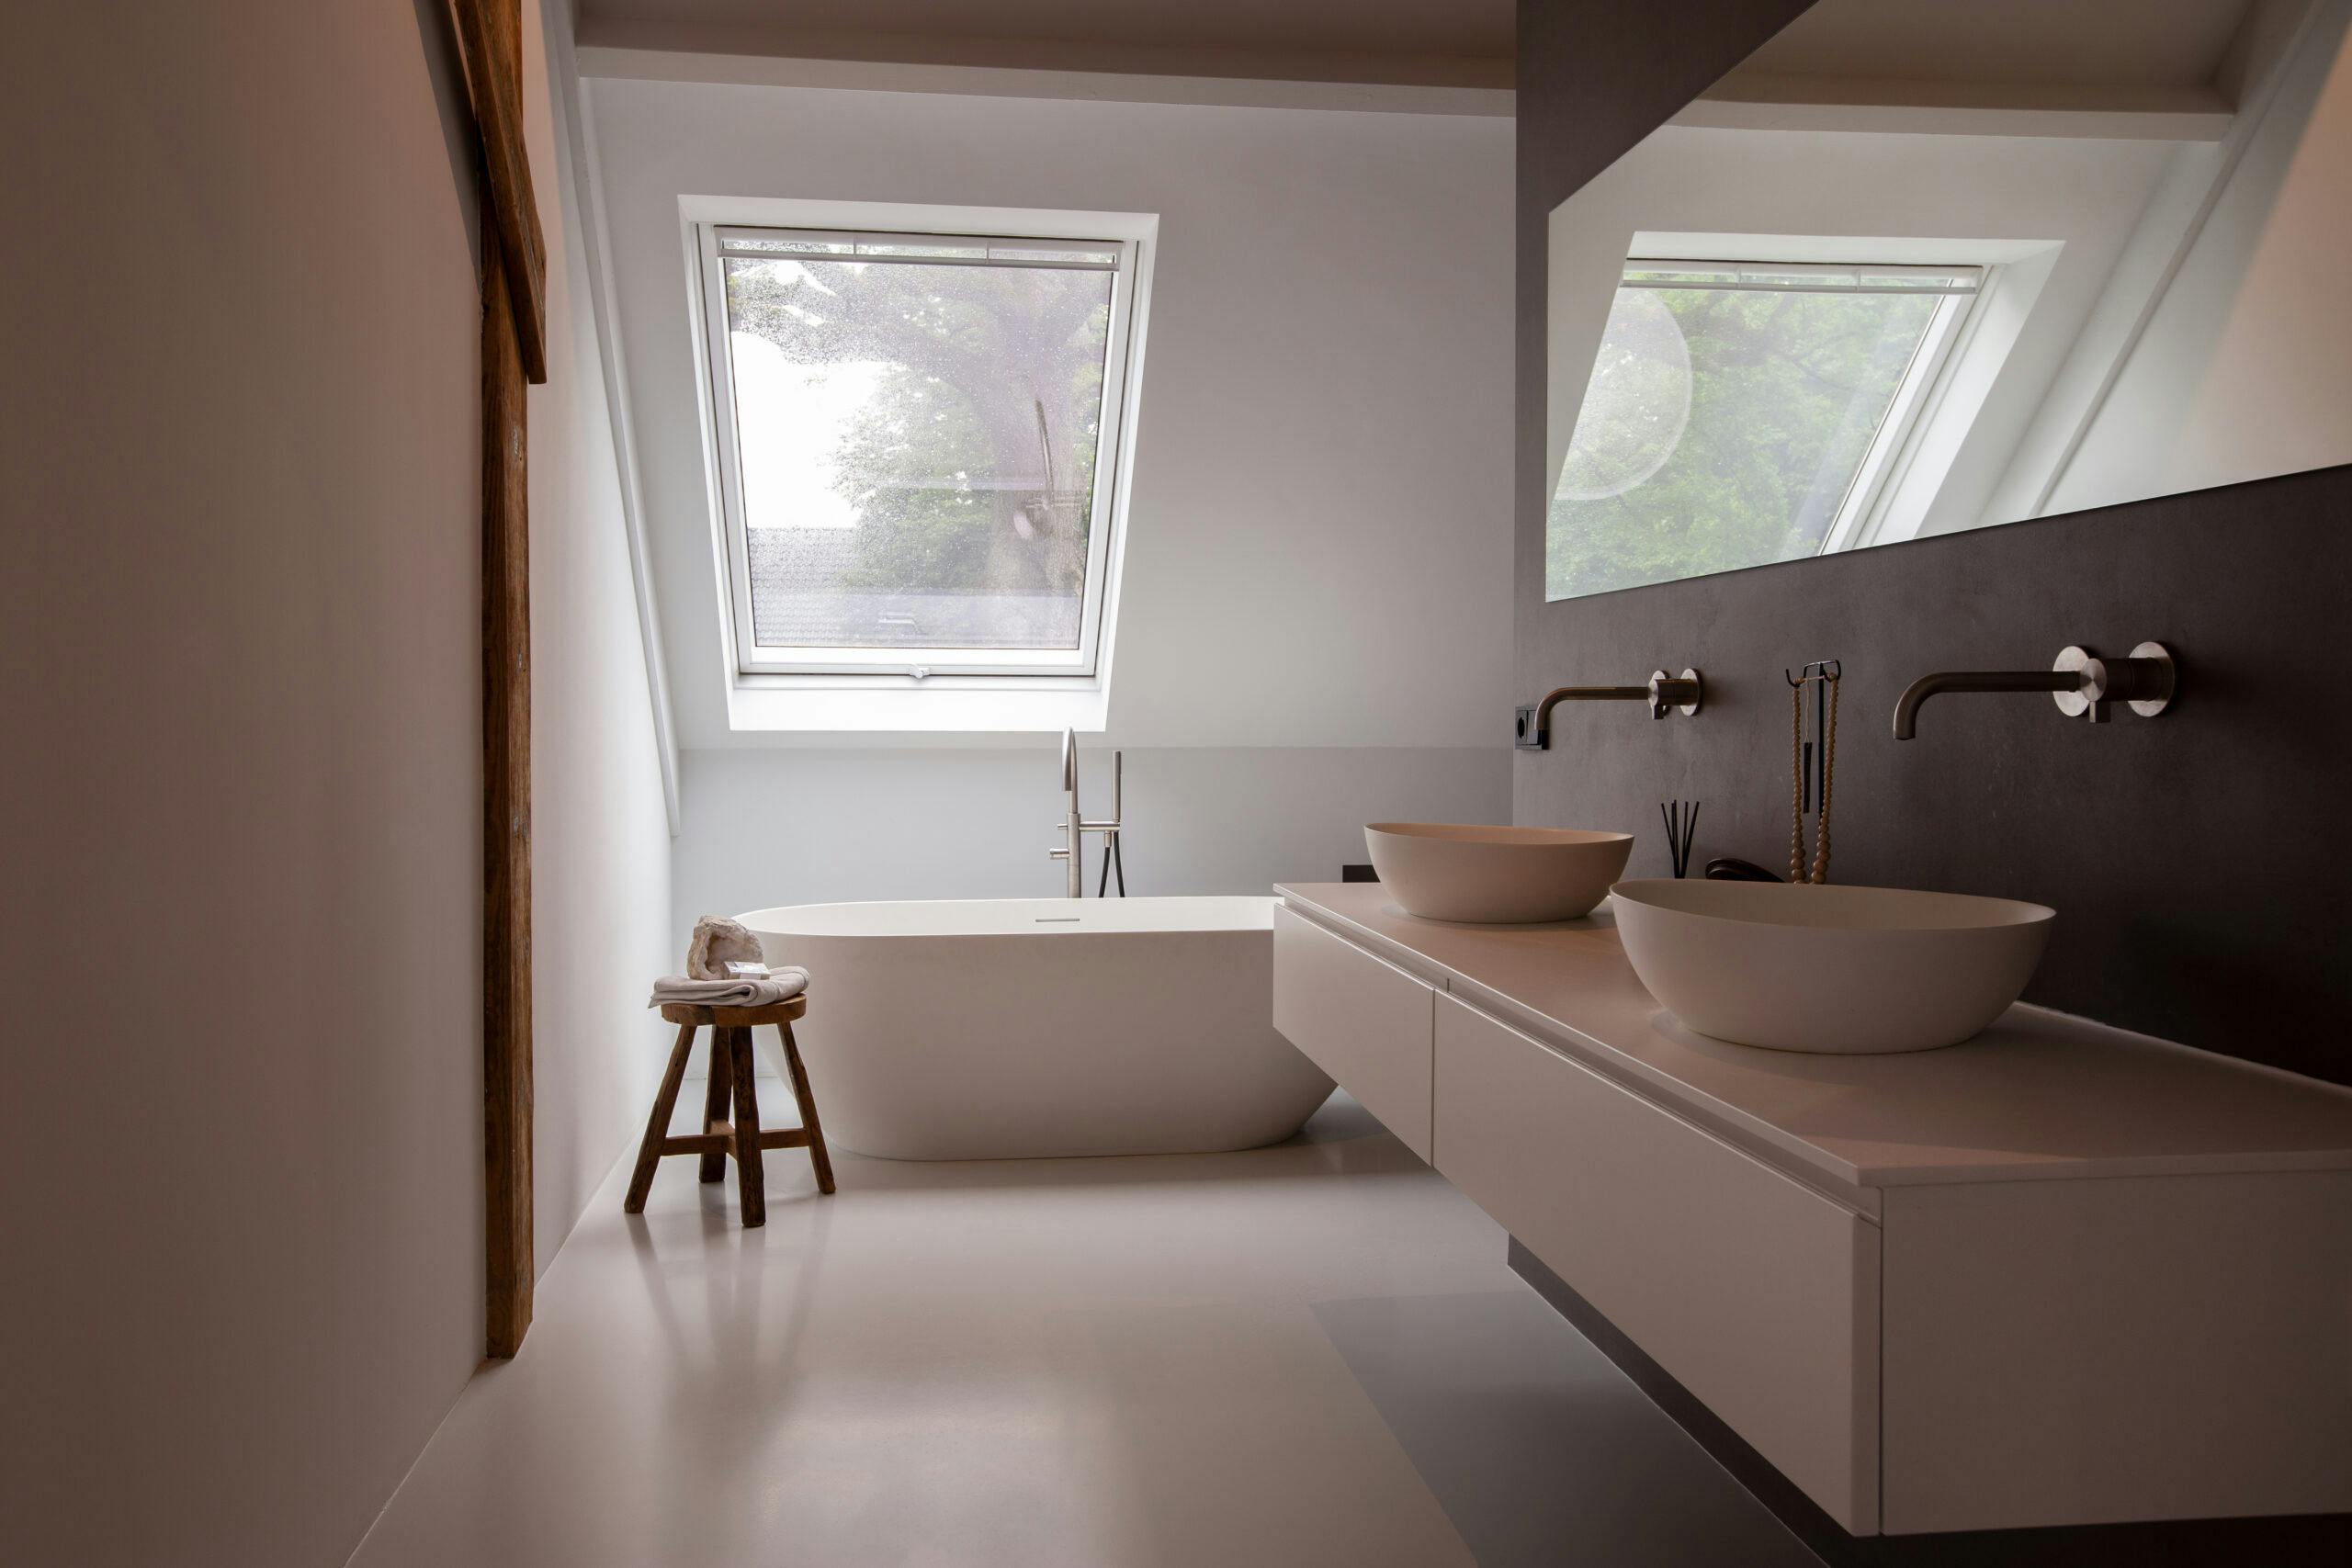 Een badkamer in Scandinavische stijl door het gebruik van witte kleuren en houten materialen.